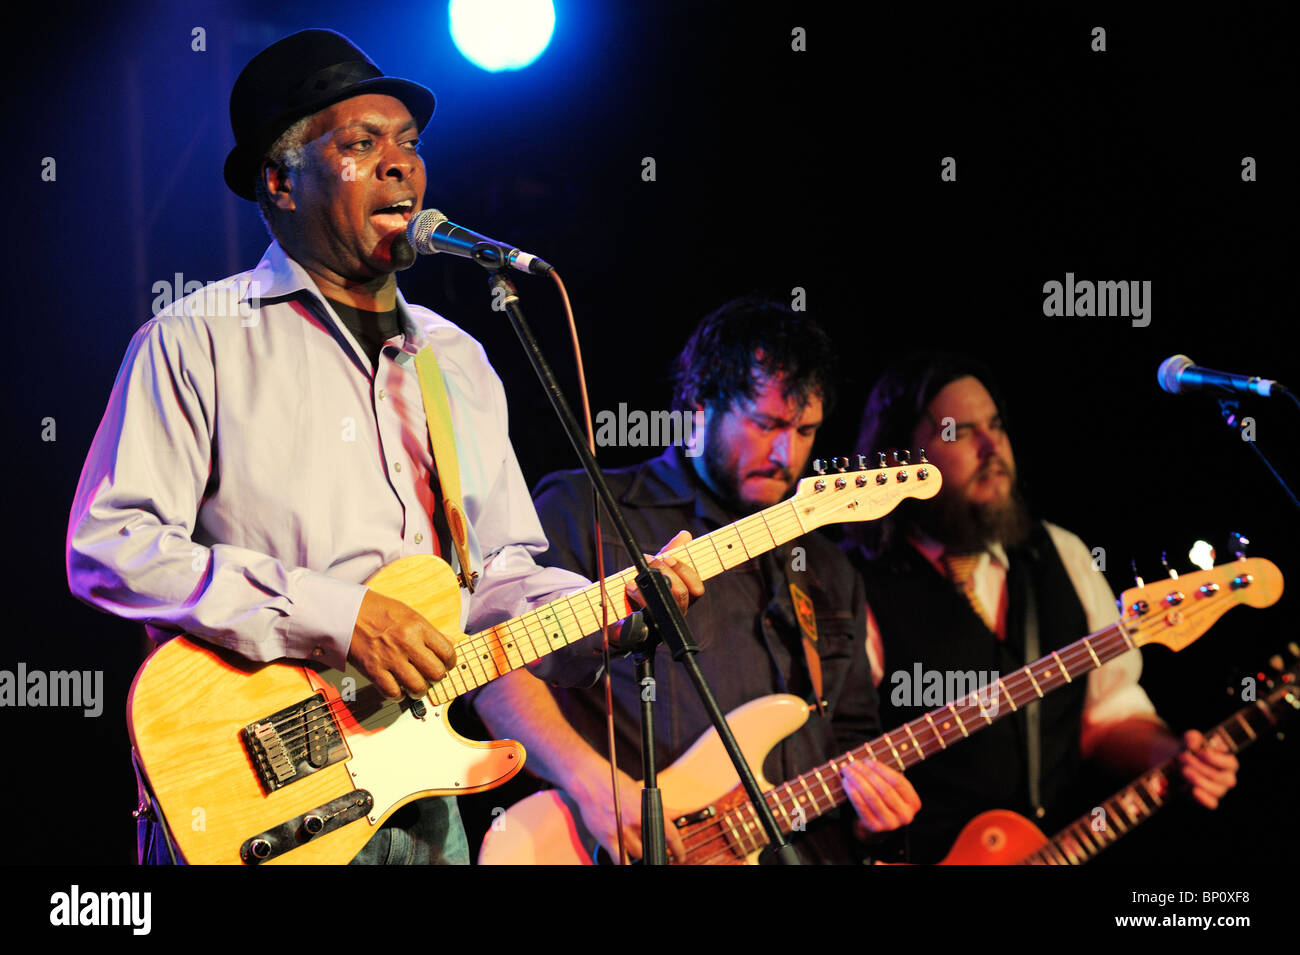 Booker T. Jones, musicien chanteur de blues américain d'effectuer dans la scène principale de cadrage. Maryport Blues Festival, 2010. Cumbria, Angleterre Banque D'Images